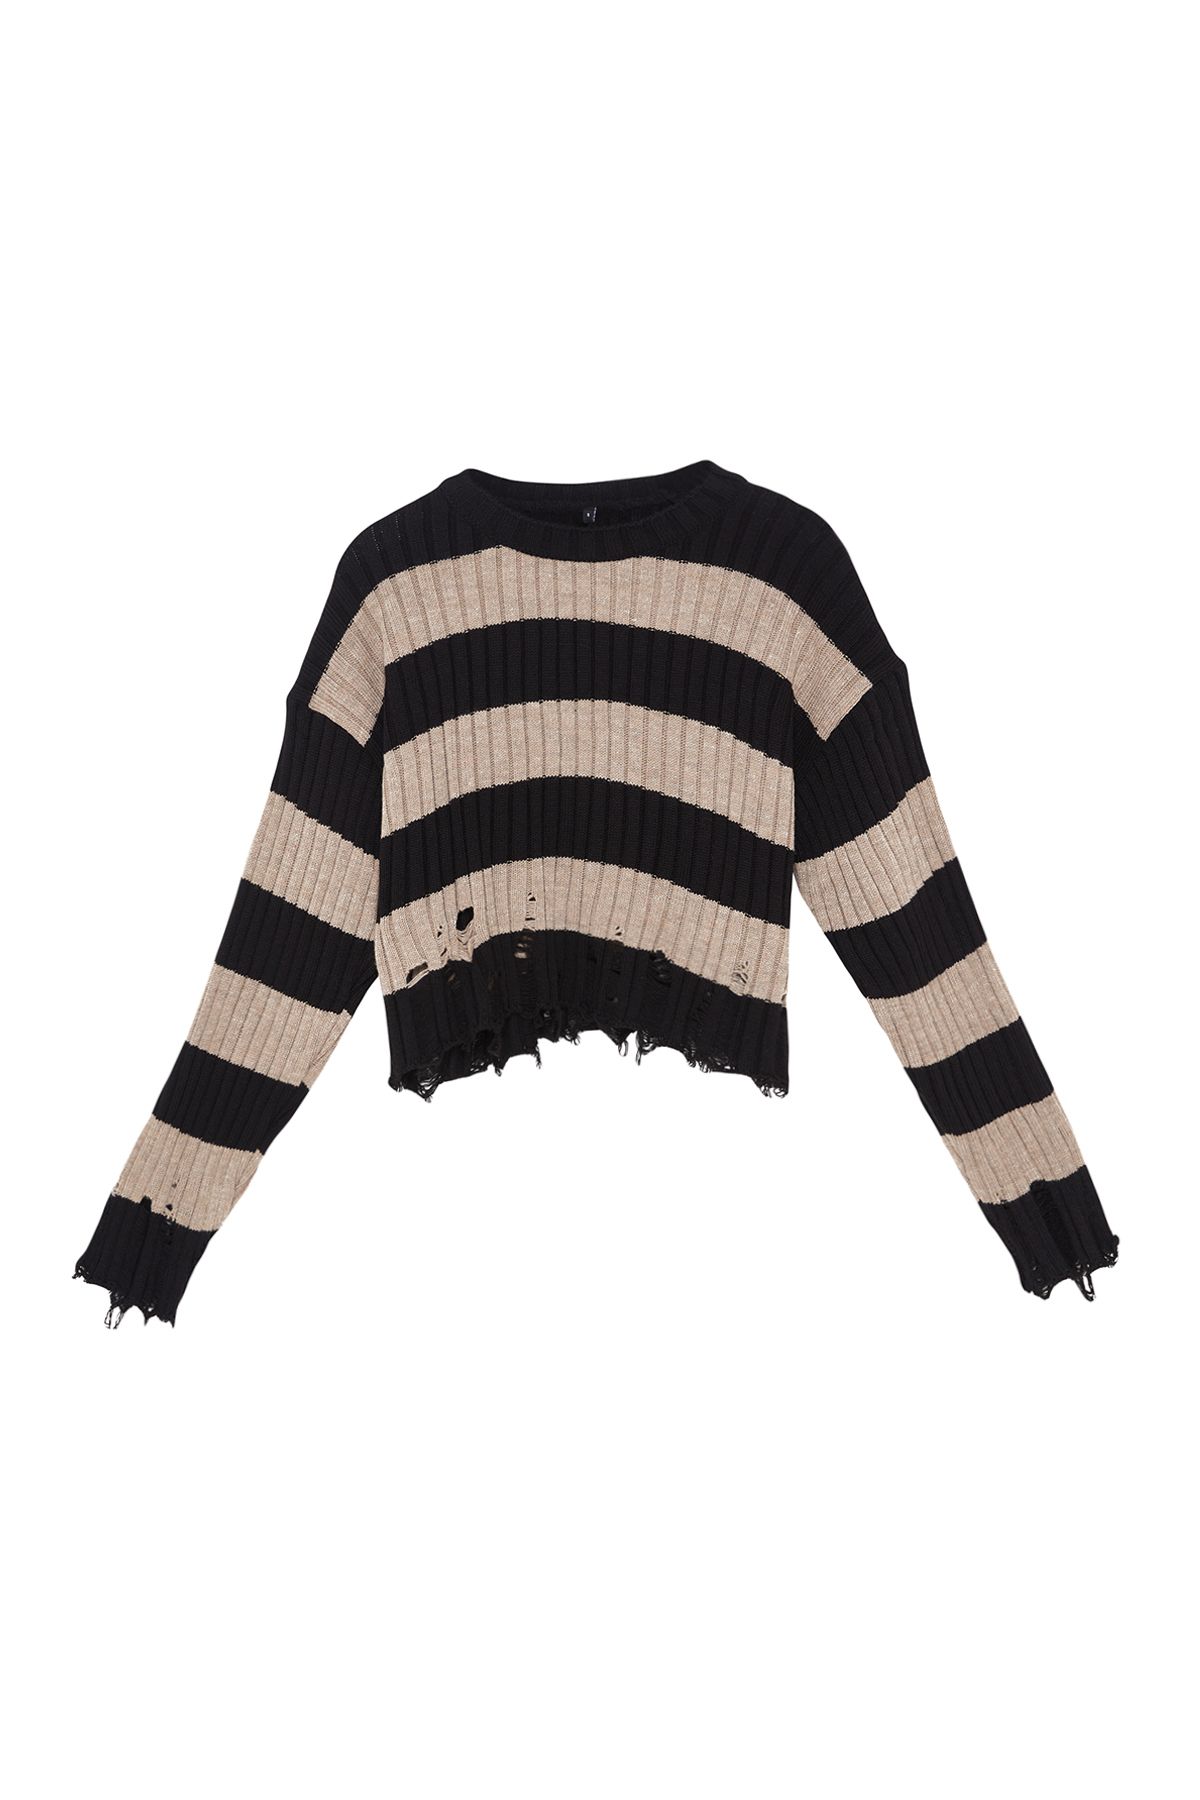 Trendyol Black Crop Wide Fit Striped Knitwear Sweater